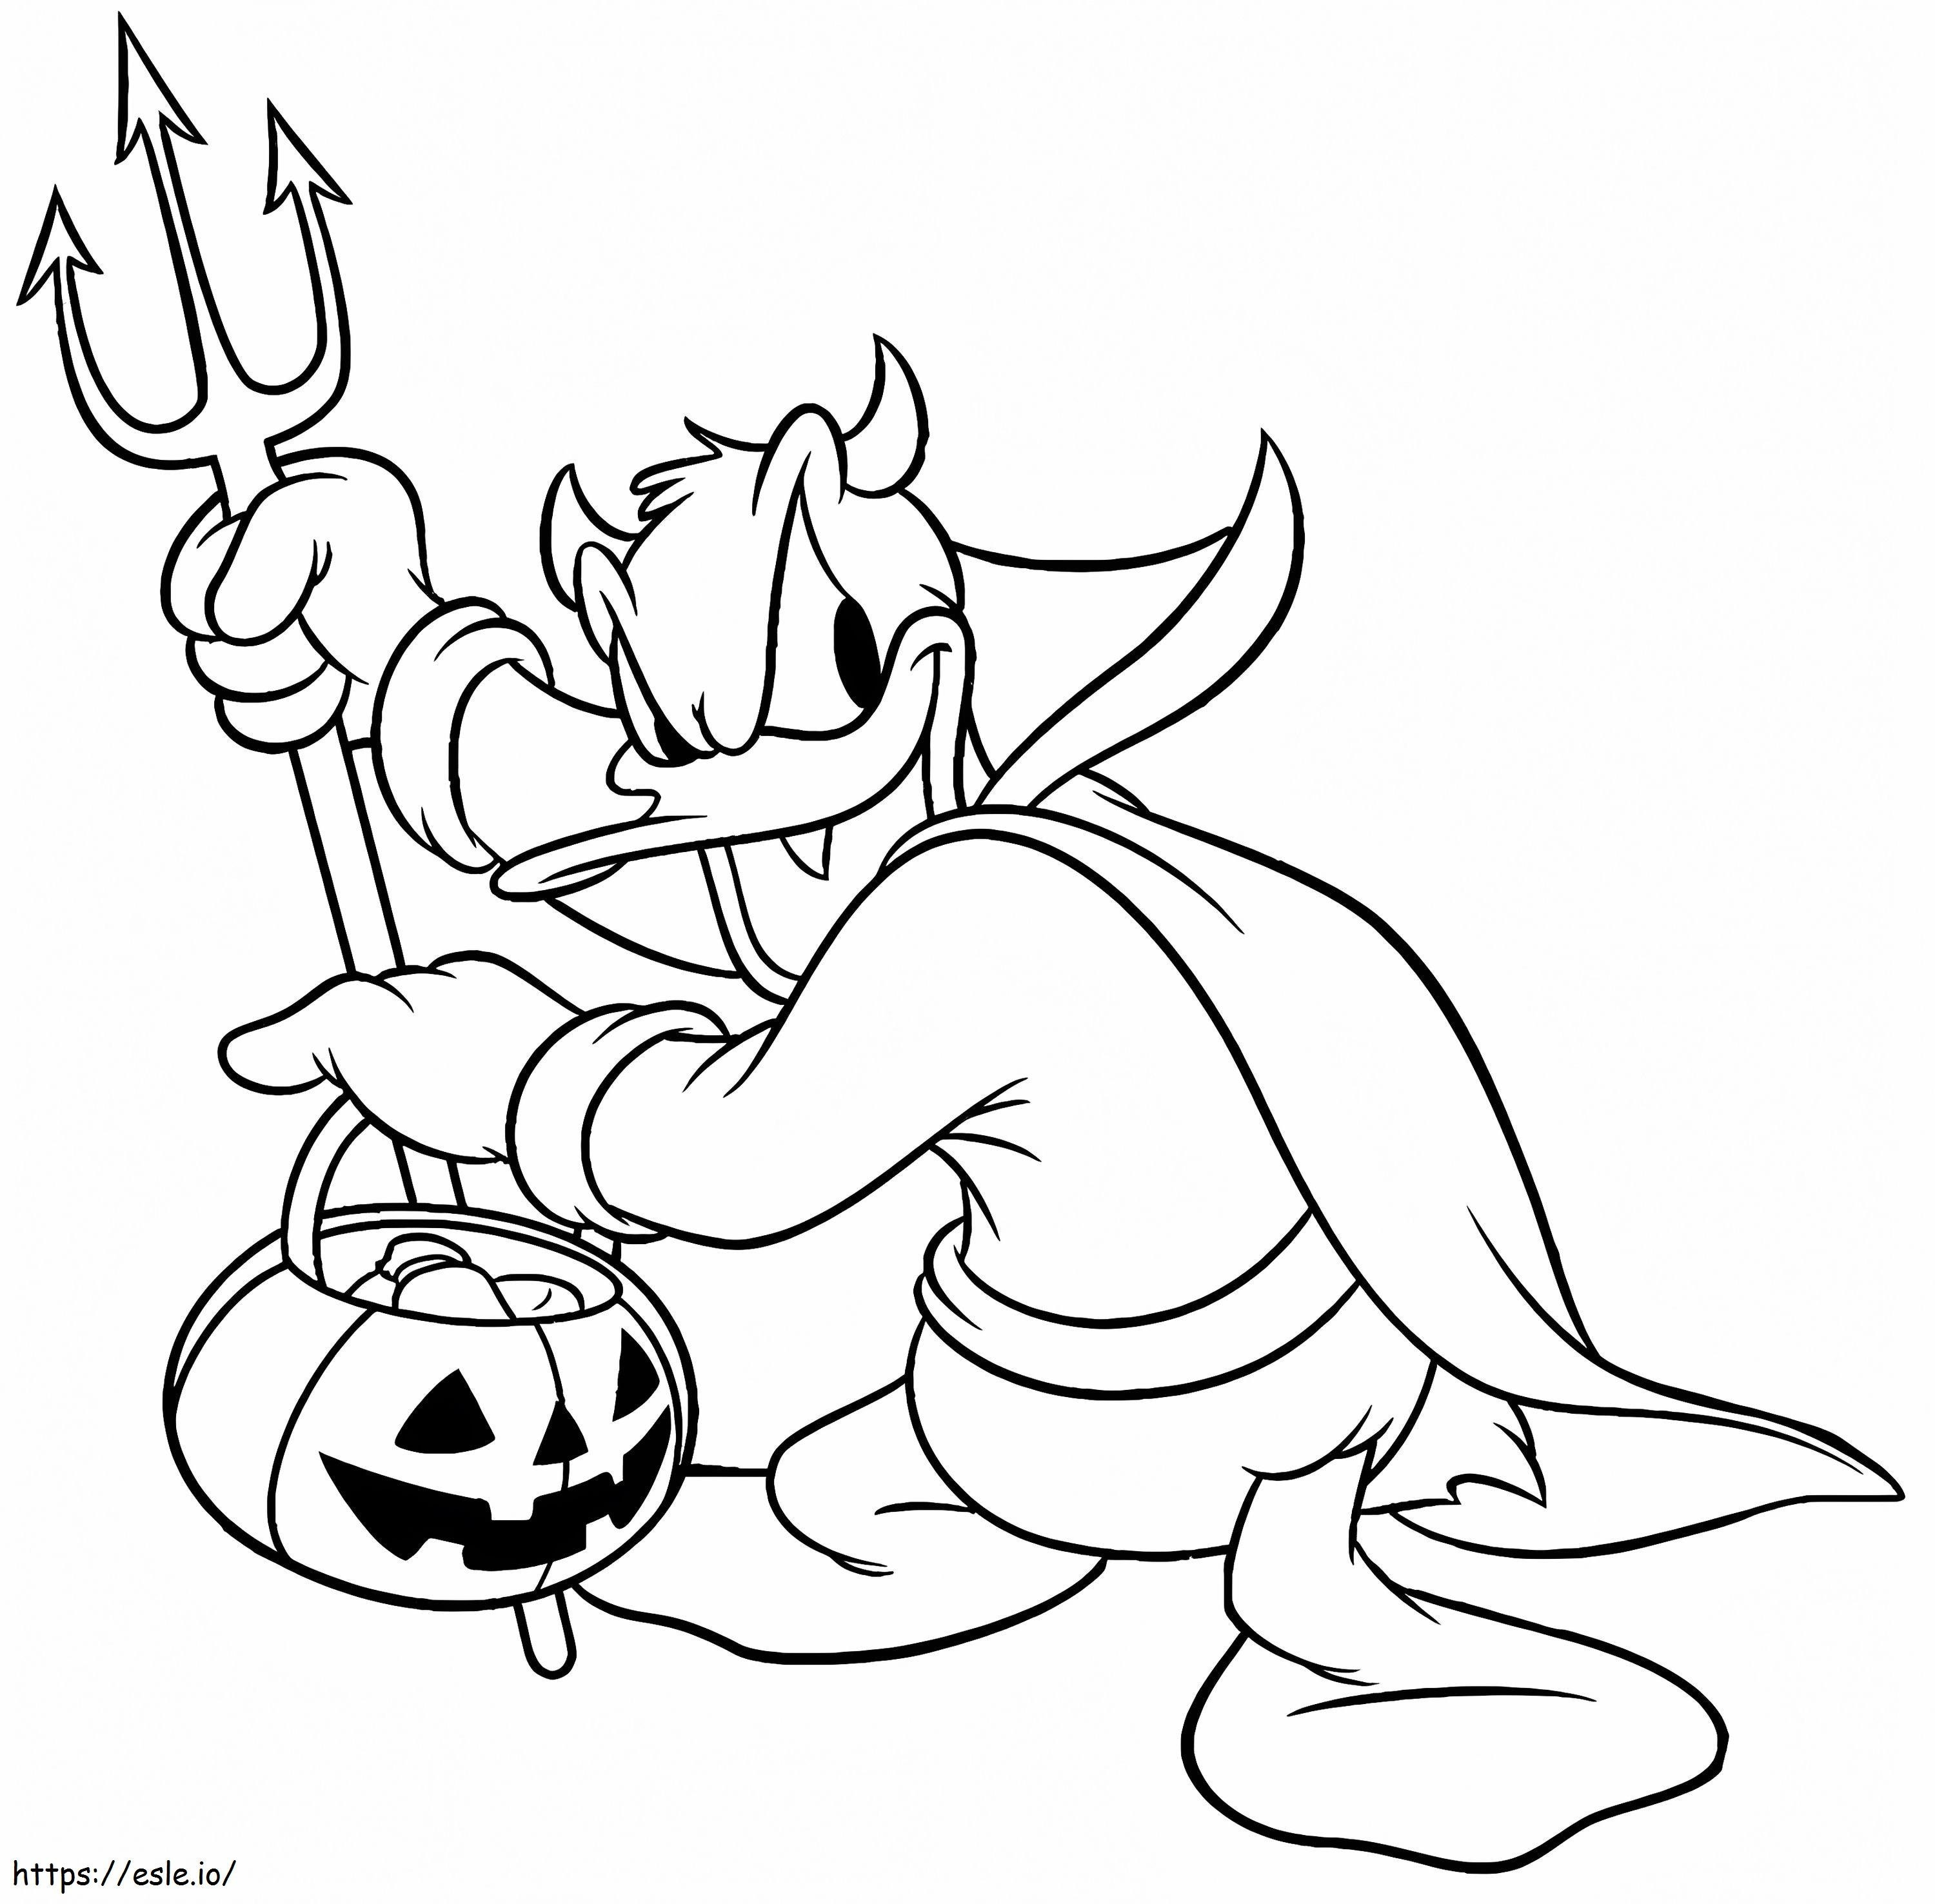 Halloweenowy Donald kolorowanka